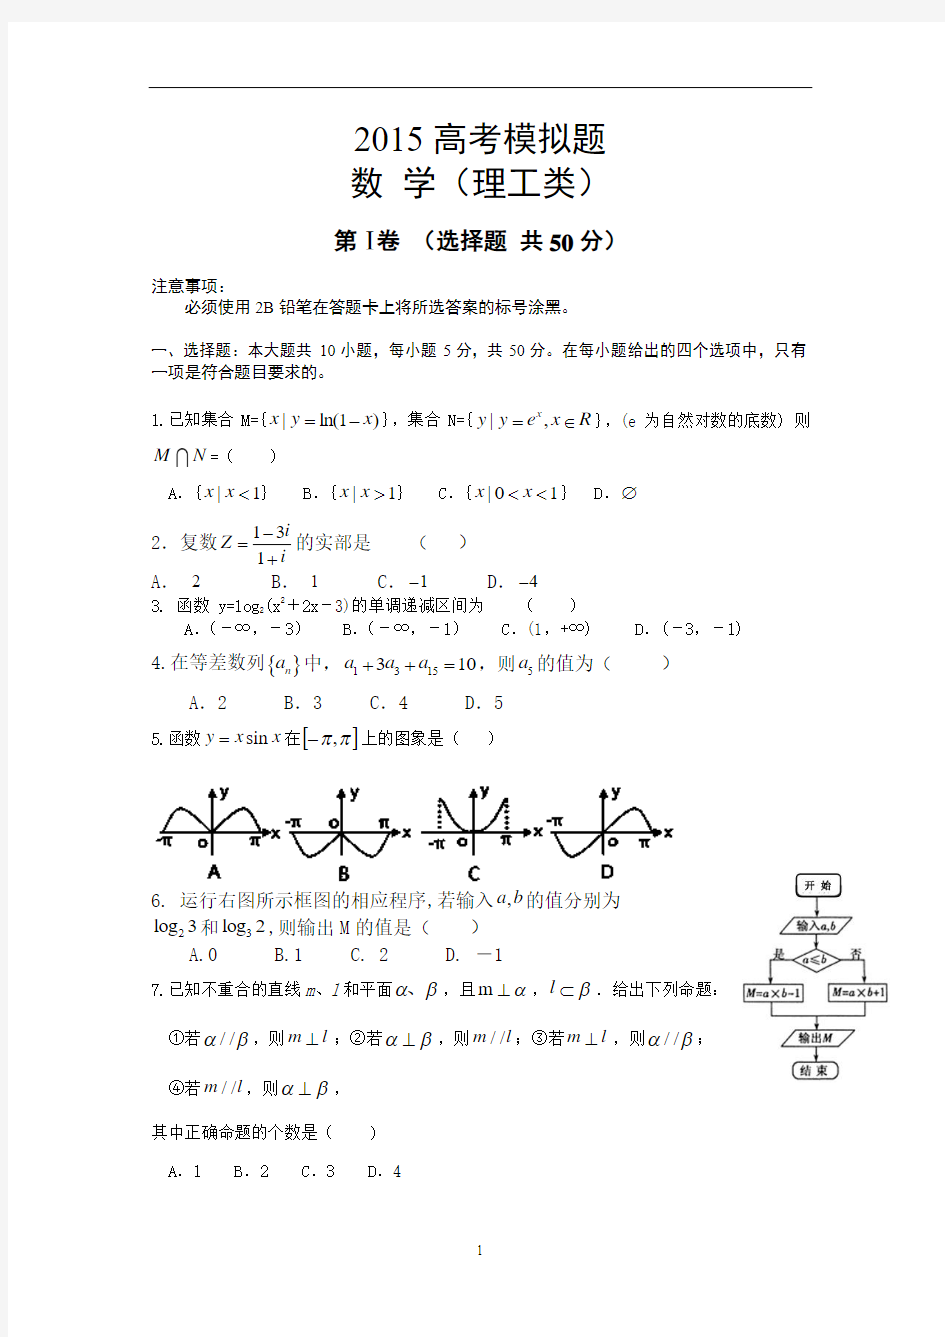 【经典】2015高考理科数学模拟题